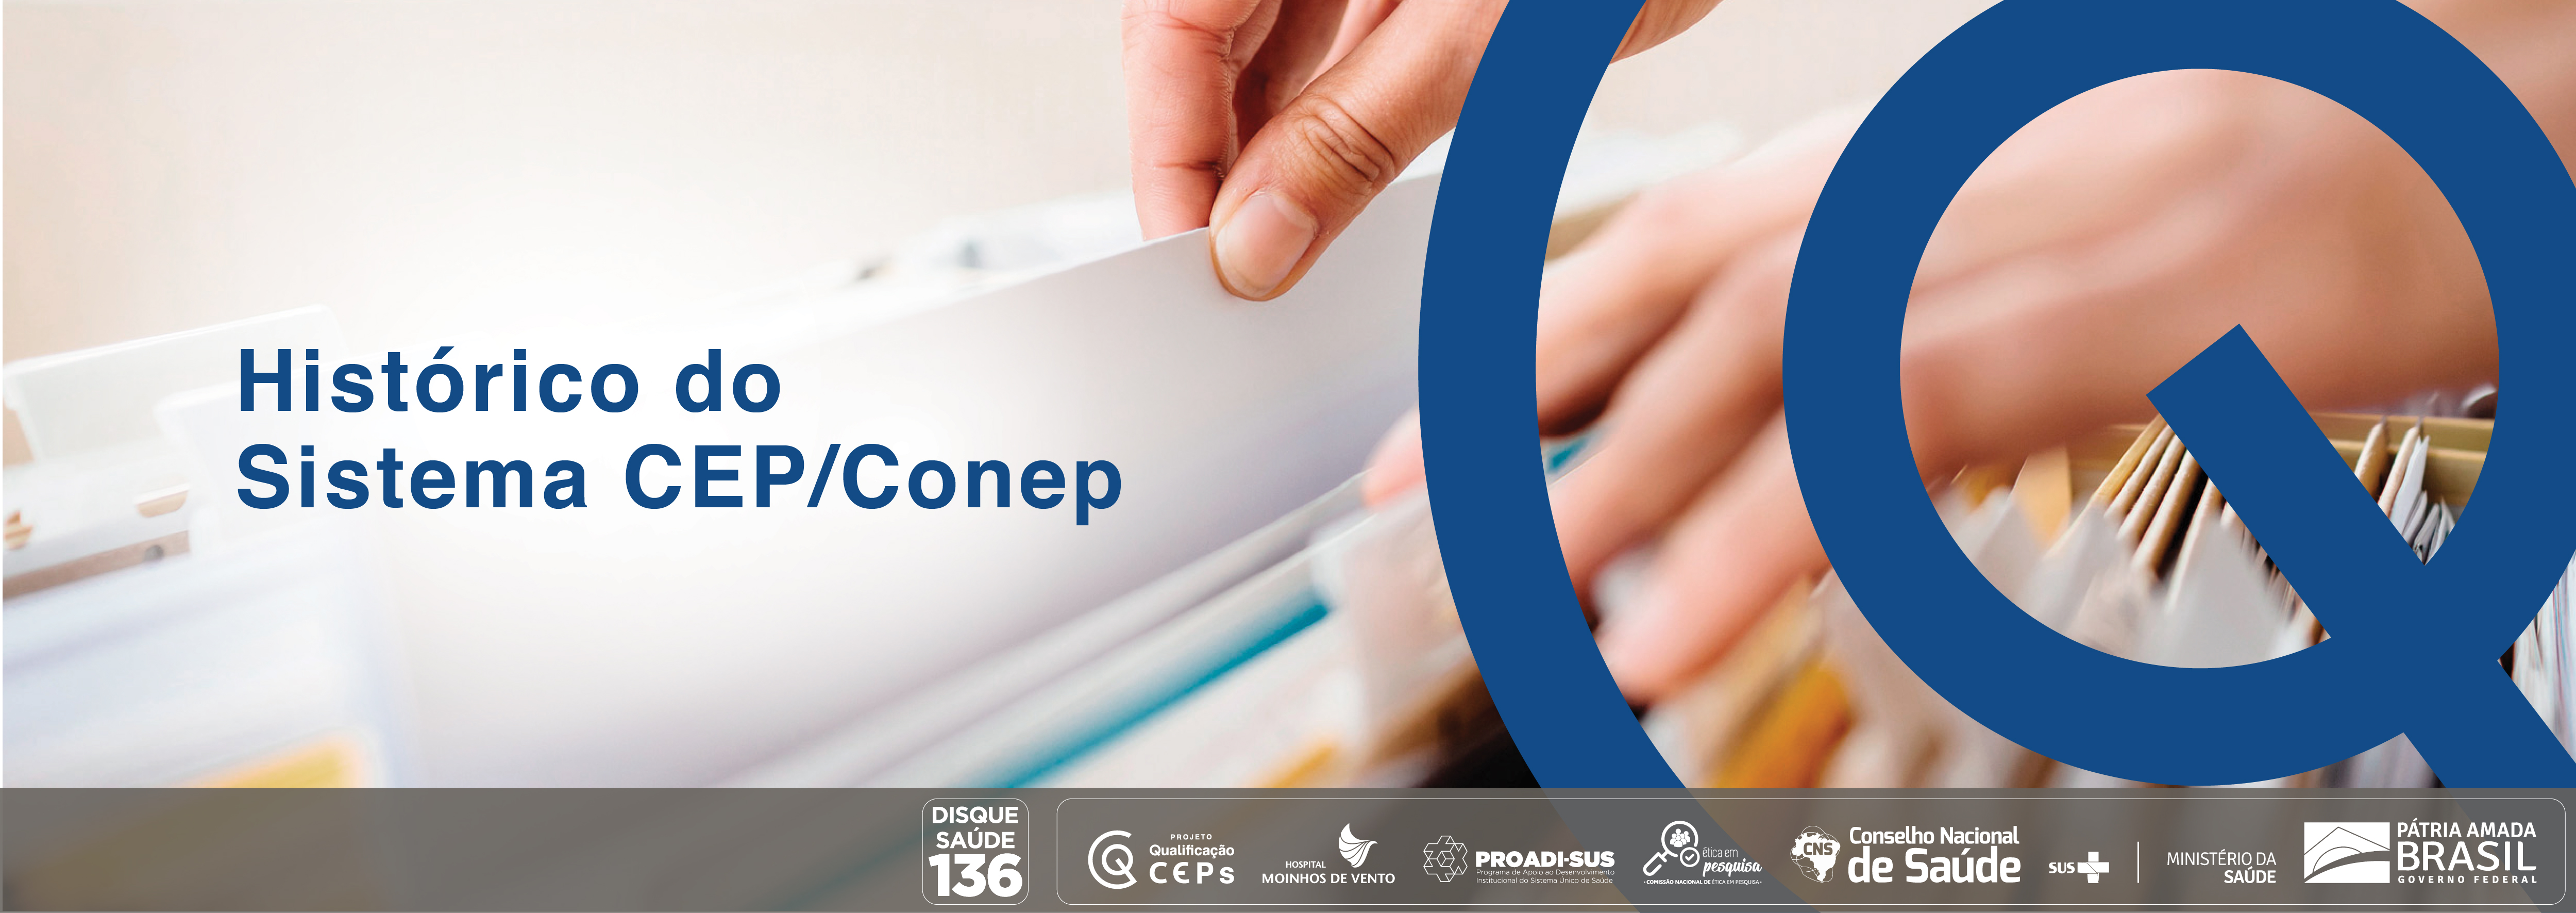 Histórico do Sistema CEP/Conep CEP_2021_HSCC